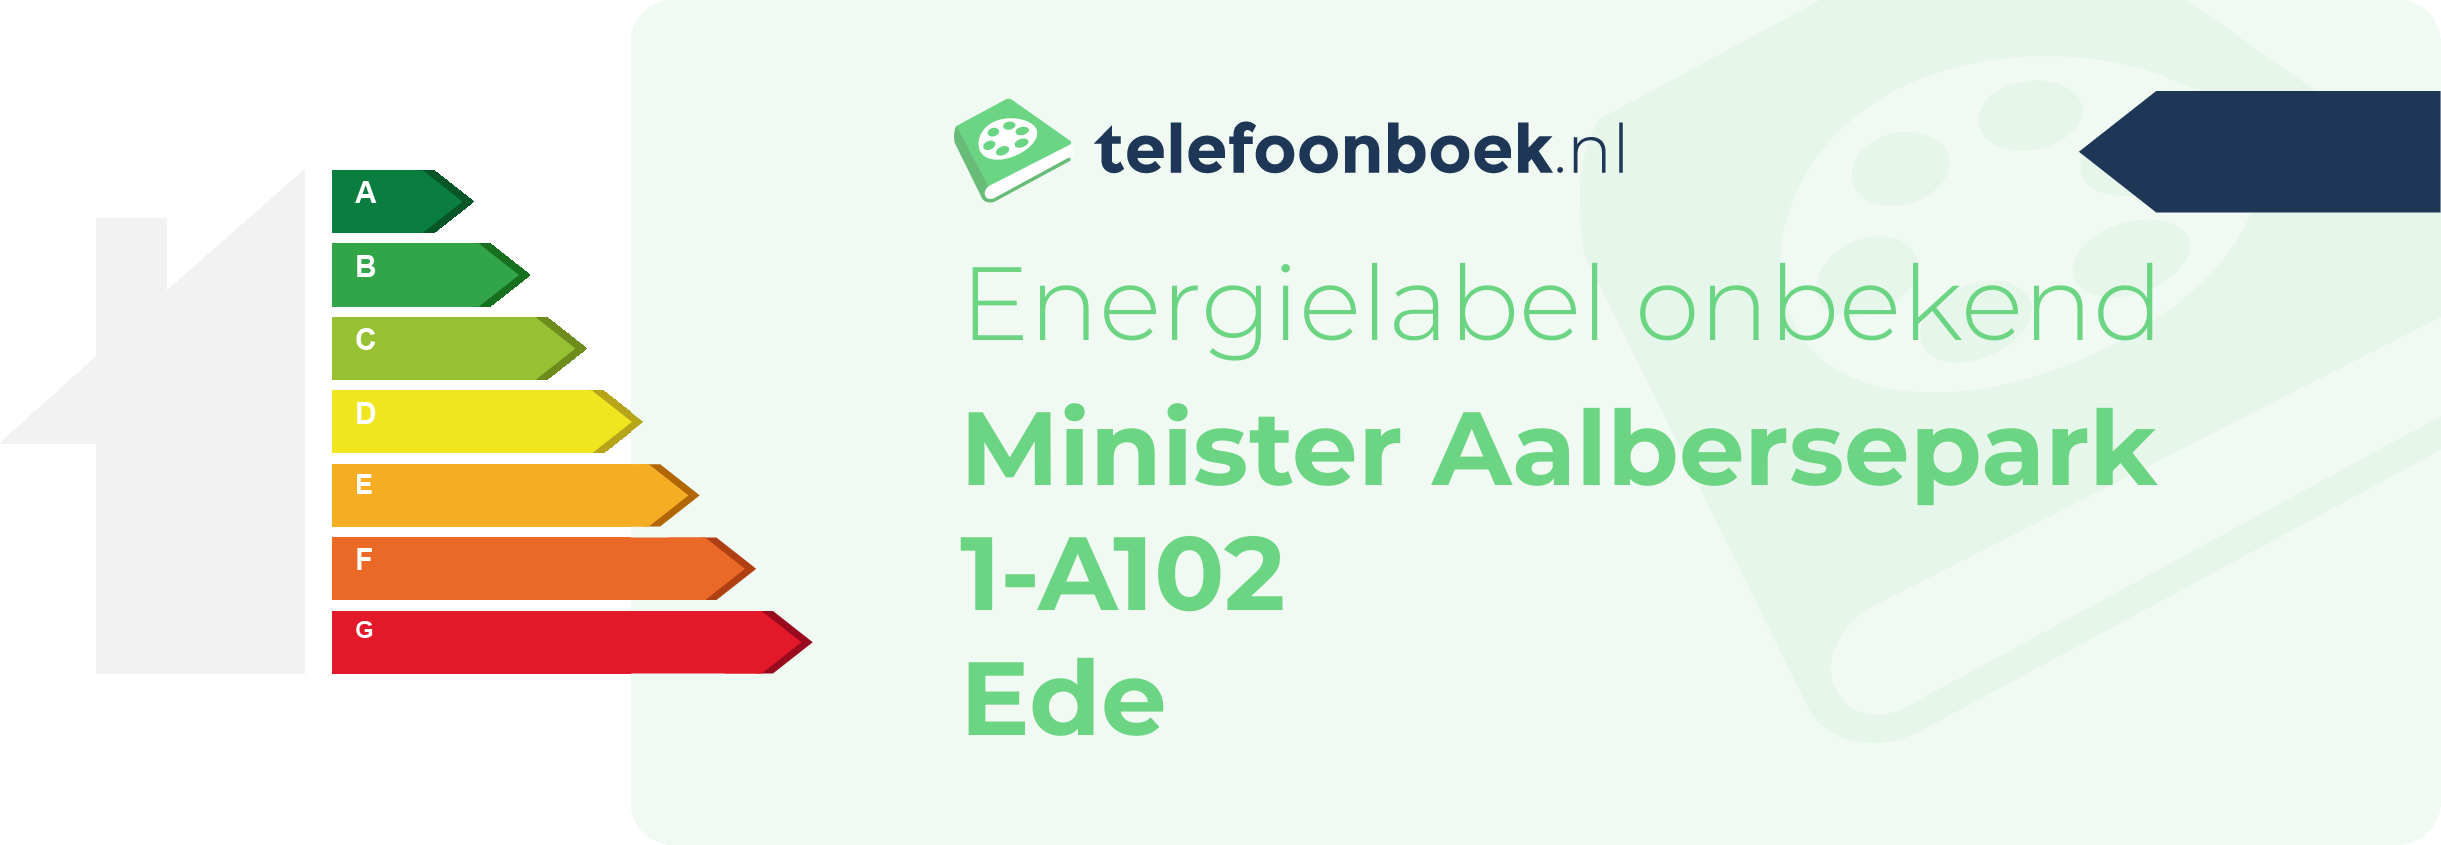 Energielabel Minister Aalbersepark 1-A102 Ede